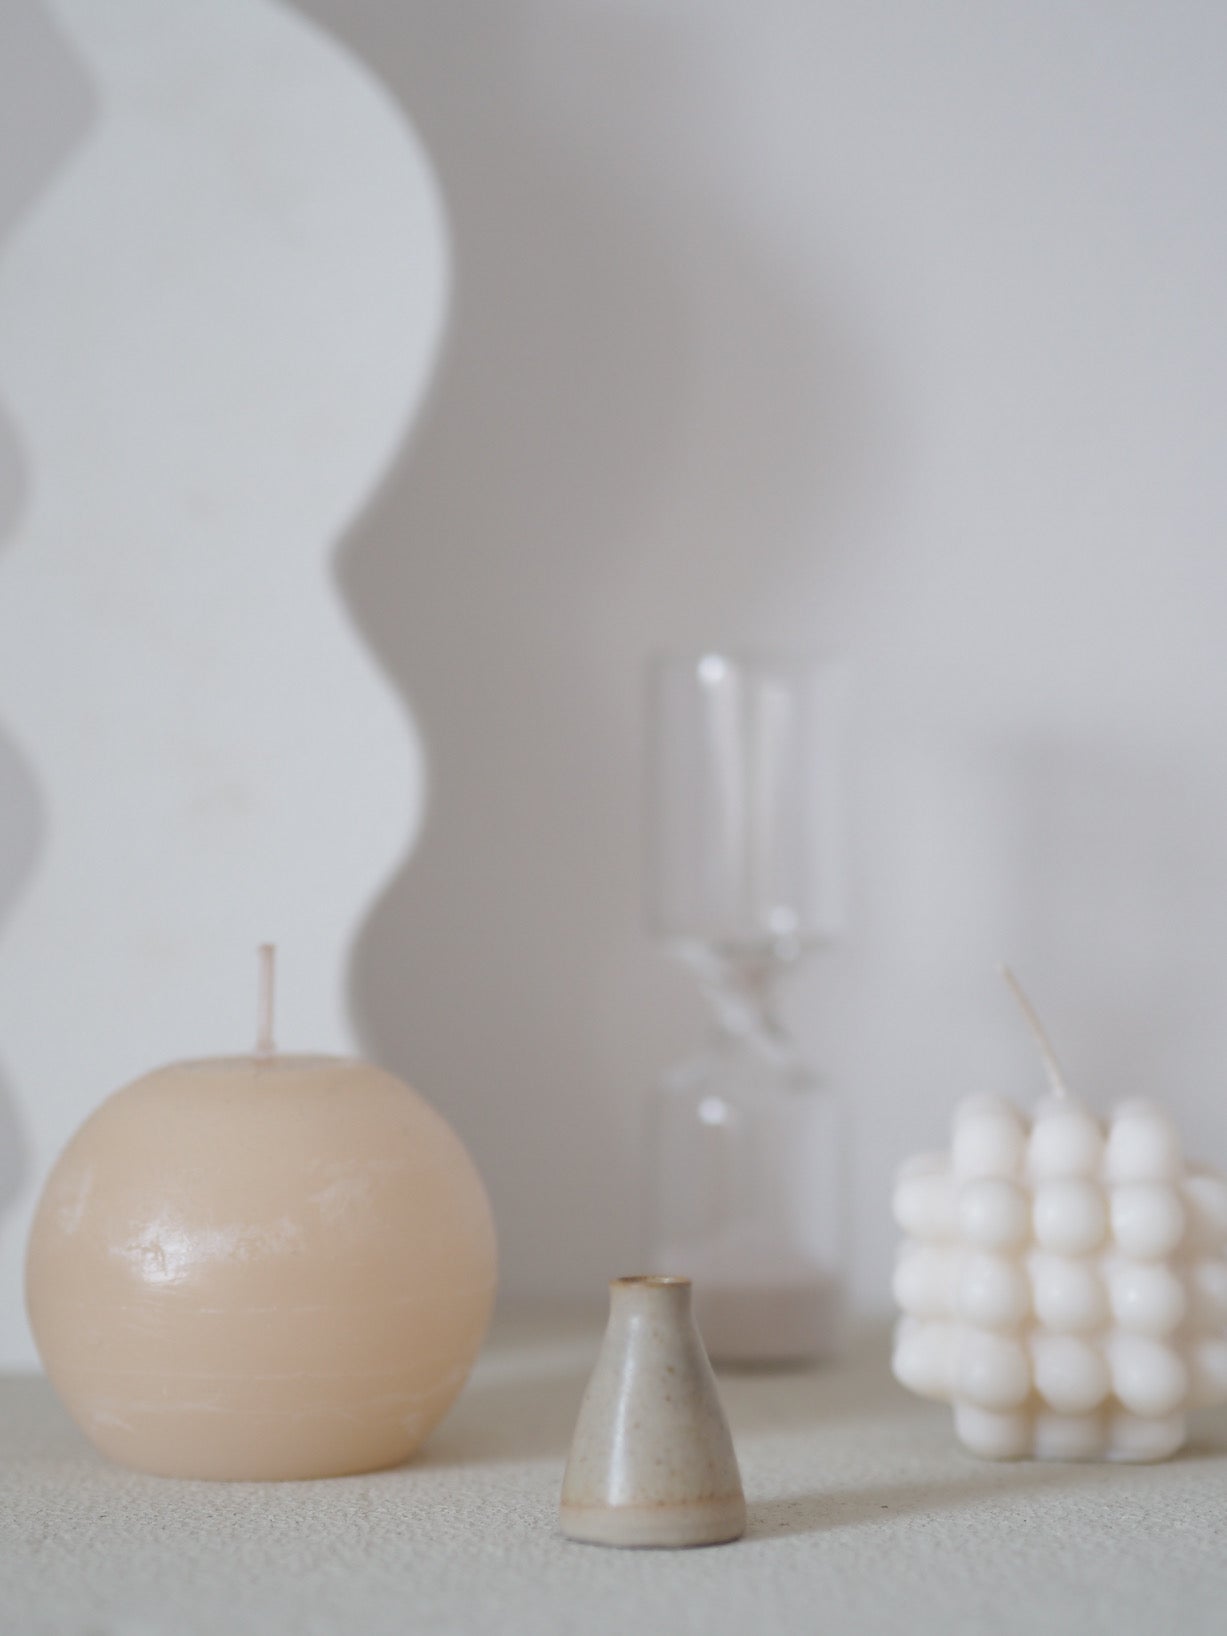 Miniature vase by Krisztina Serra